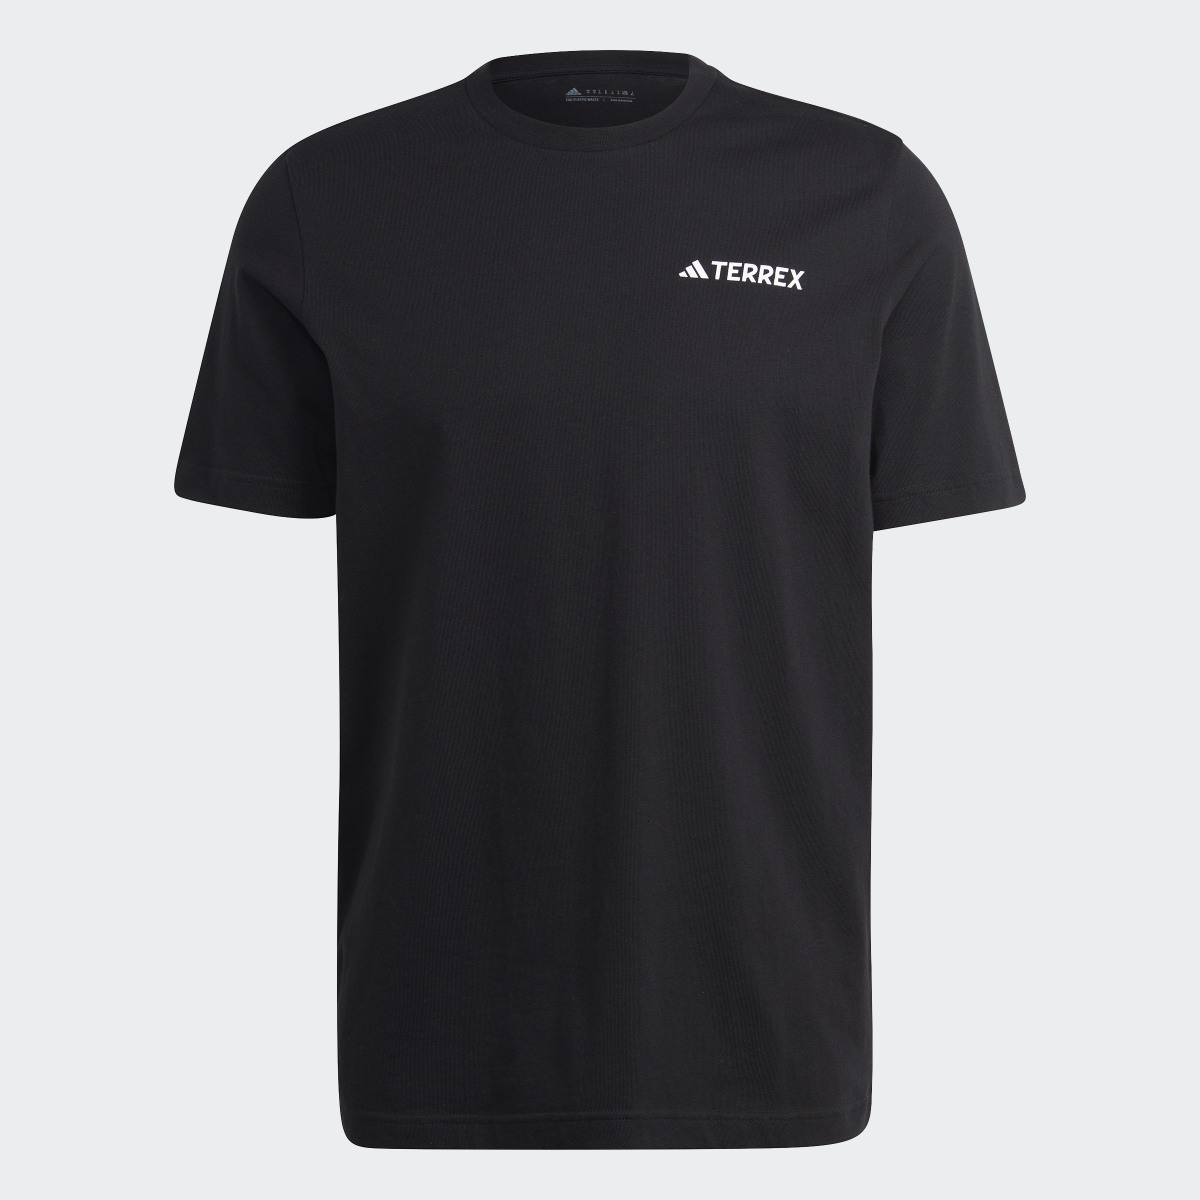 Adidas Camiseta Terrex Graphic Altitude. 5